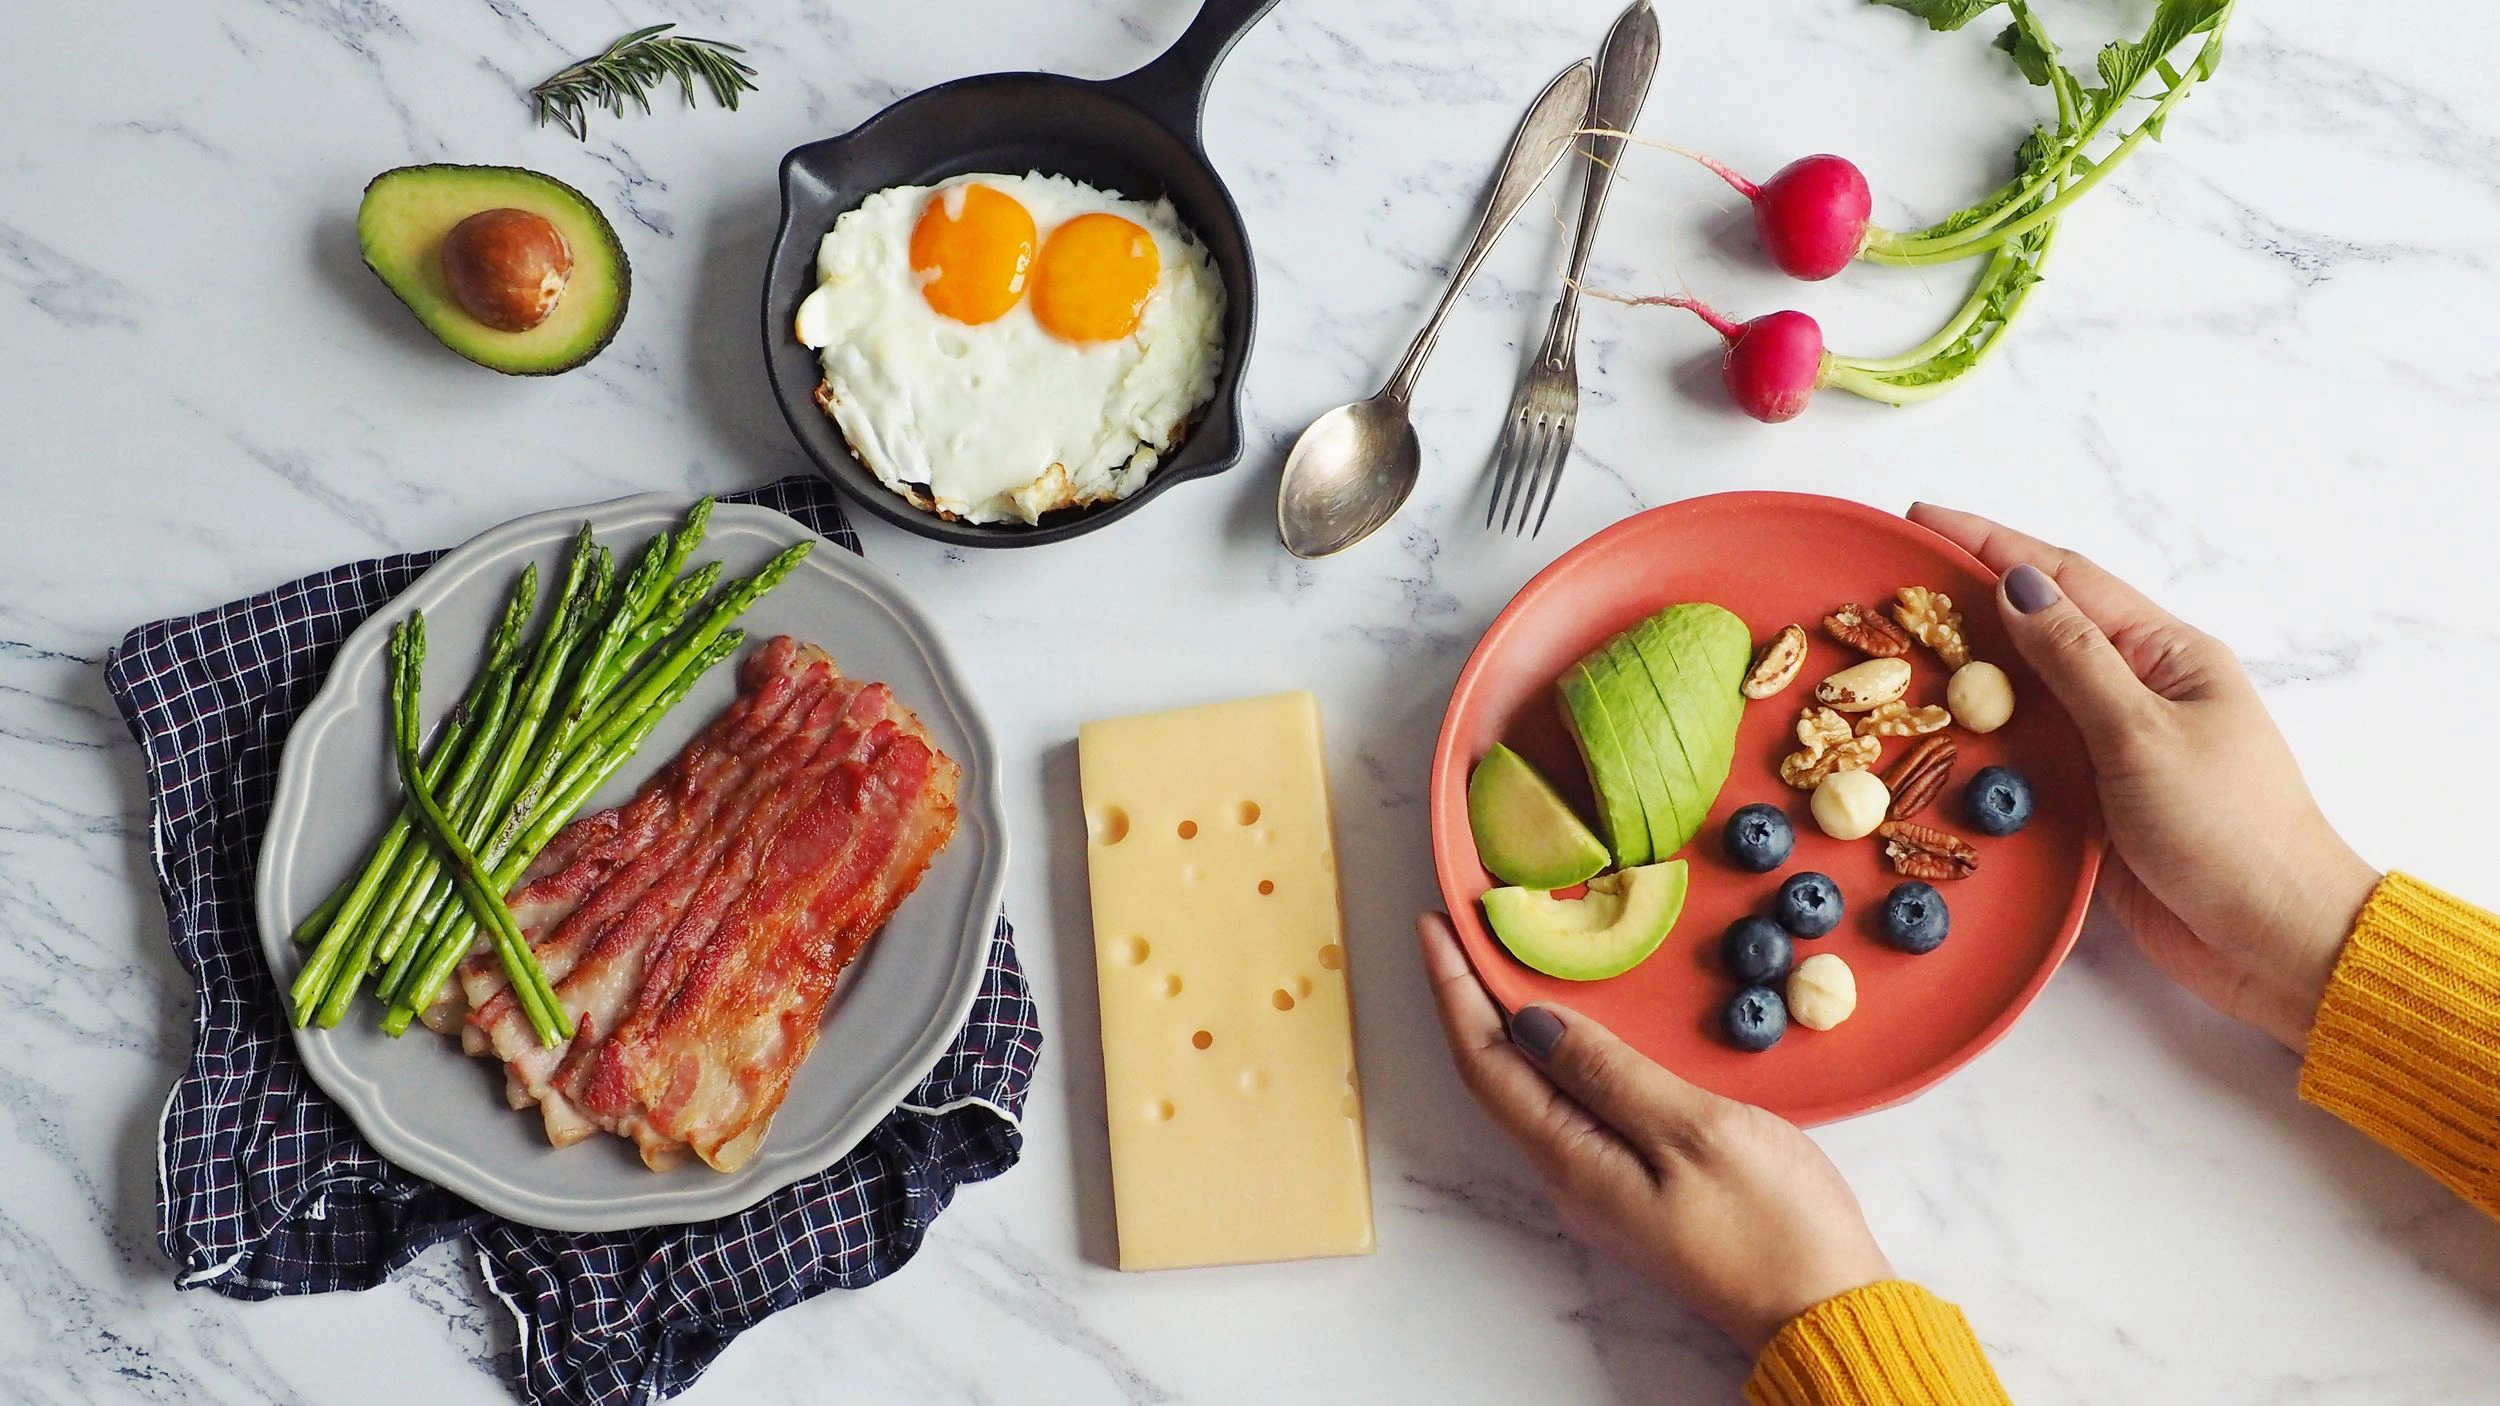 Гастроэнтеролог: идеальный завтрак состоит из белков, сложных углеводов и жиров